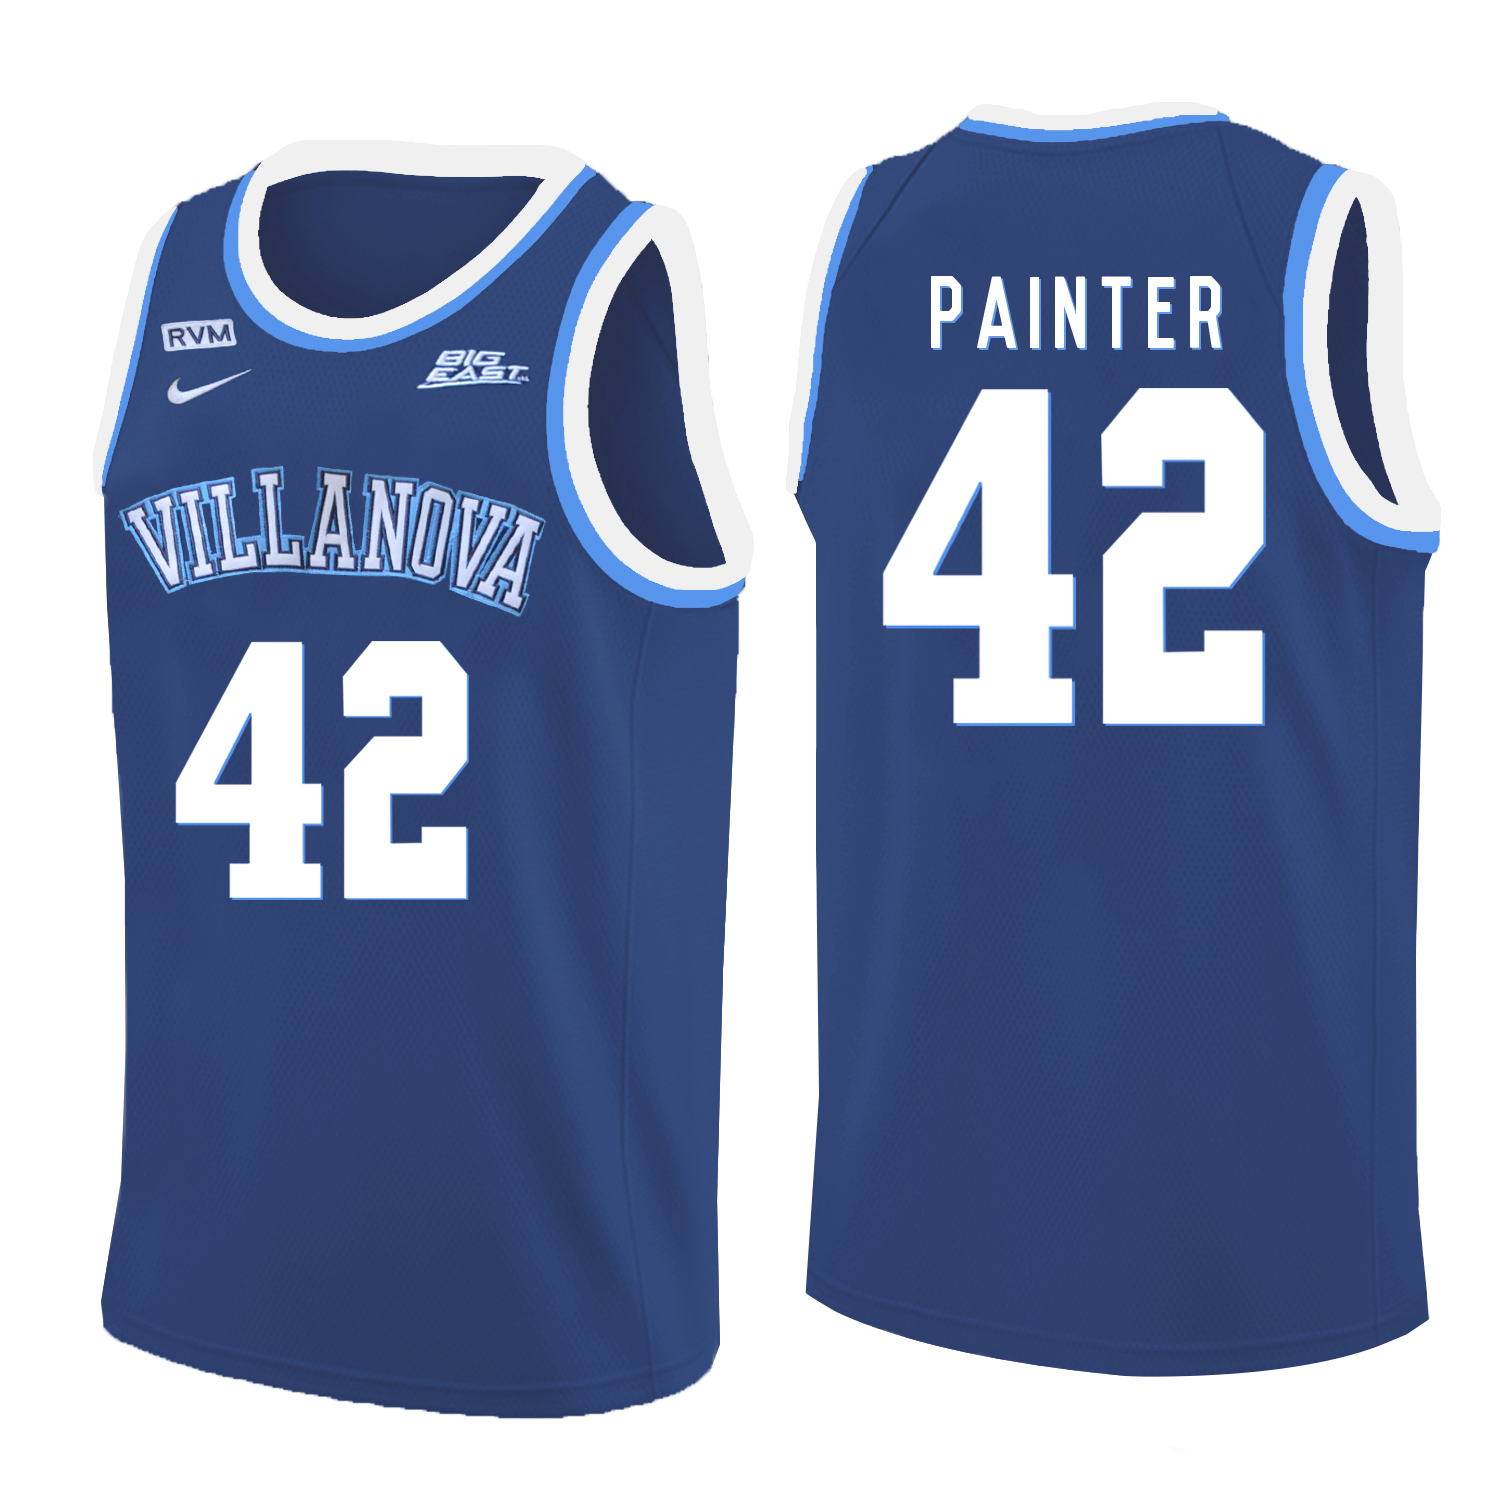 Villanova Wildcats 42 Dylan Painter Blue College Basketball Jersey